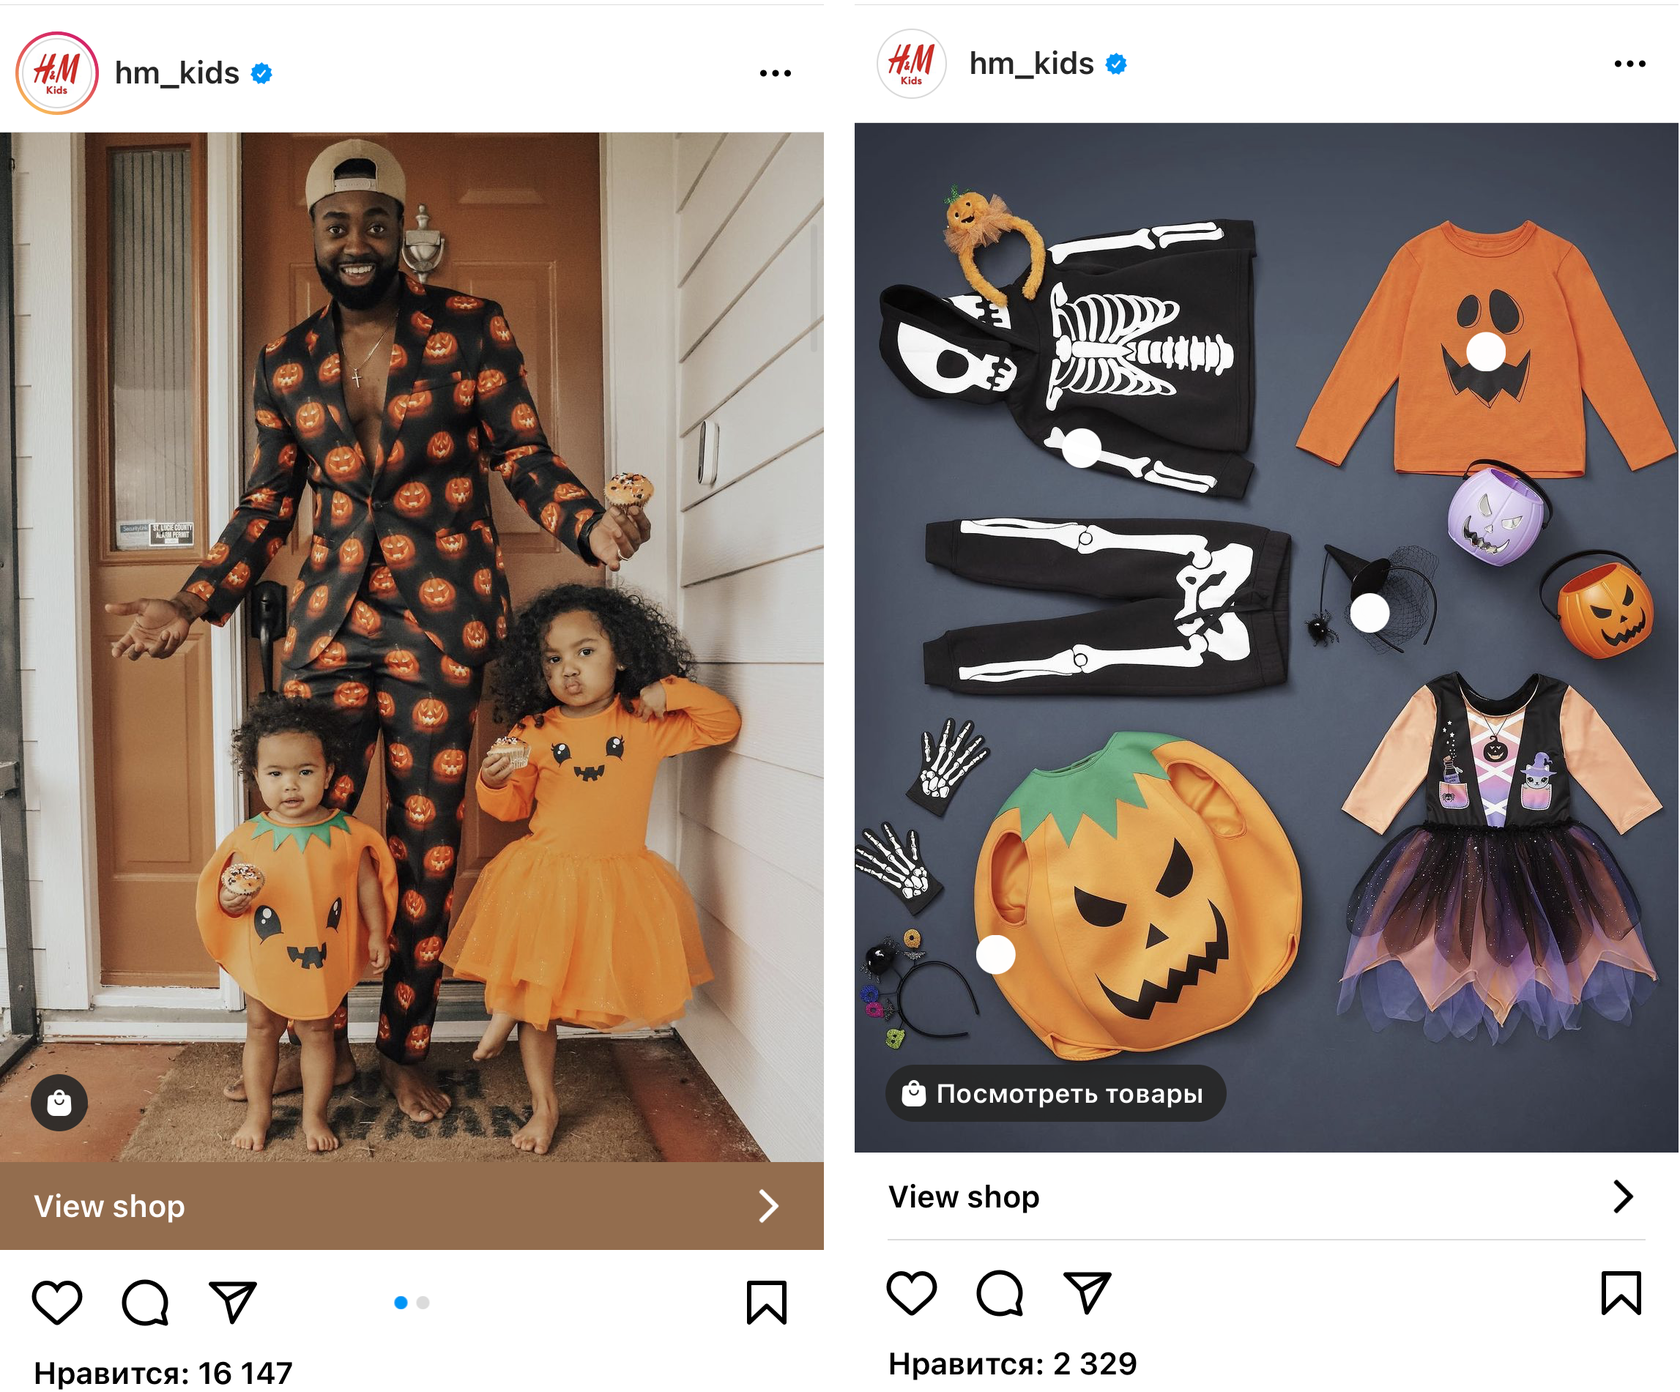 Образ на Хэллоуин для девушки — 13 идей костюмов